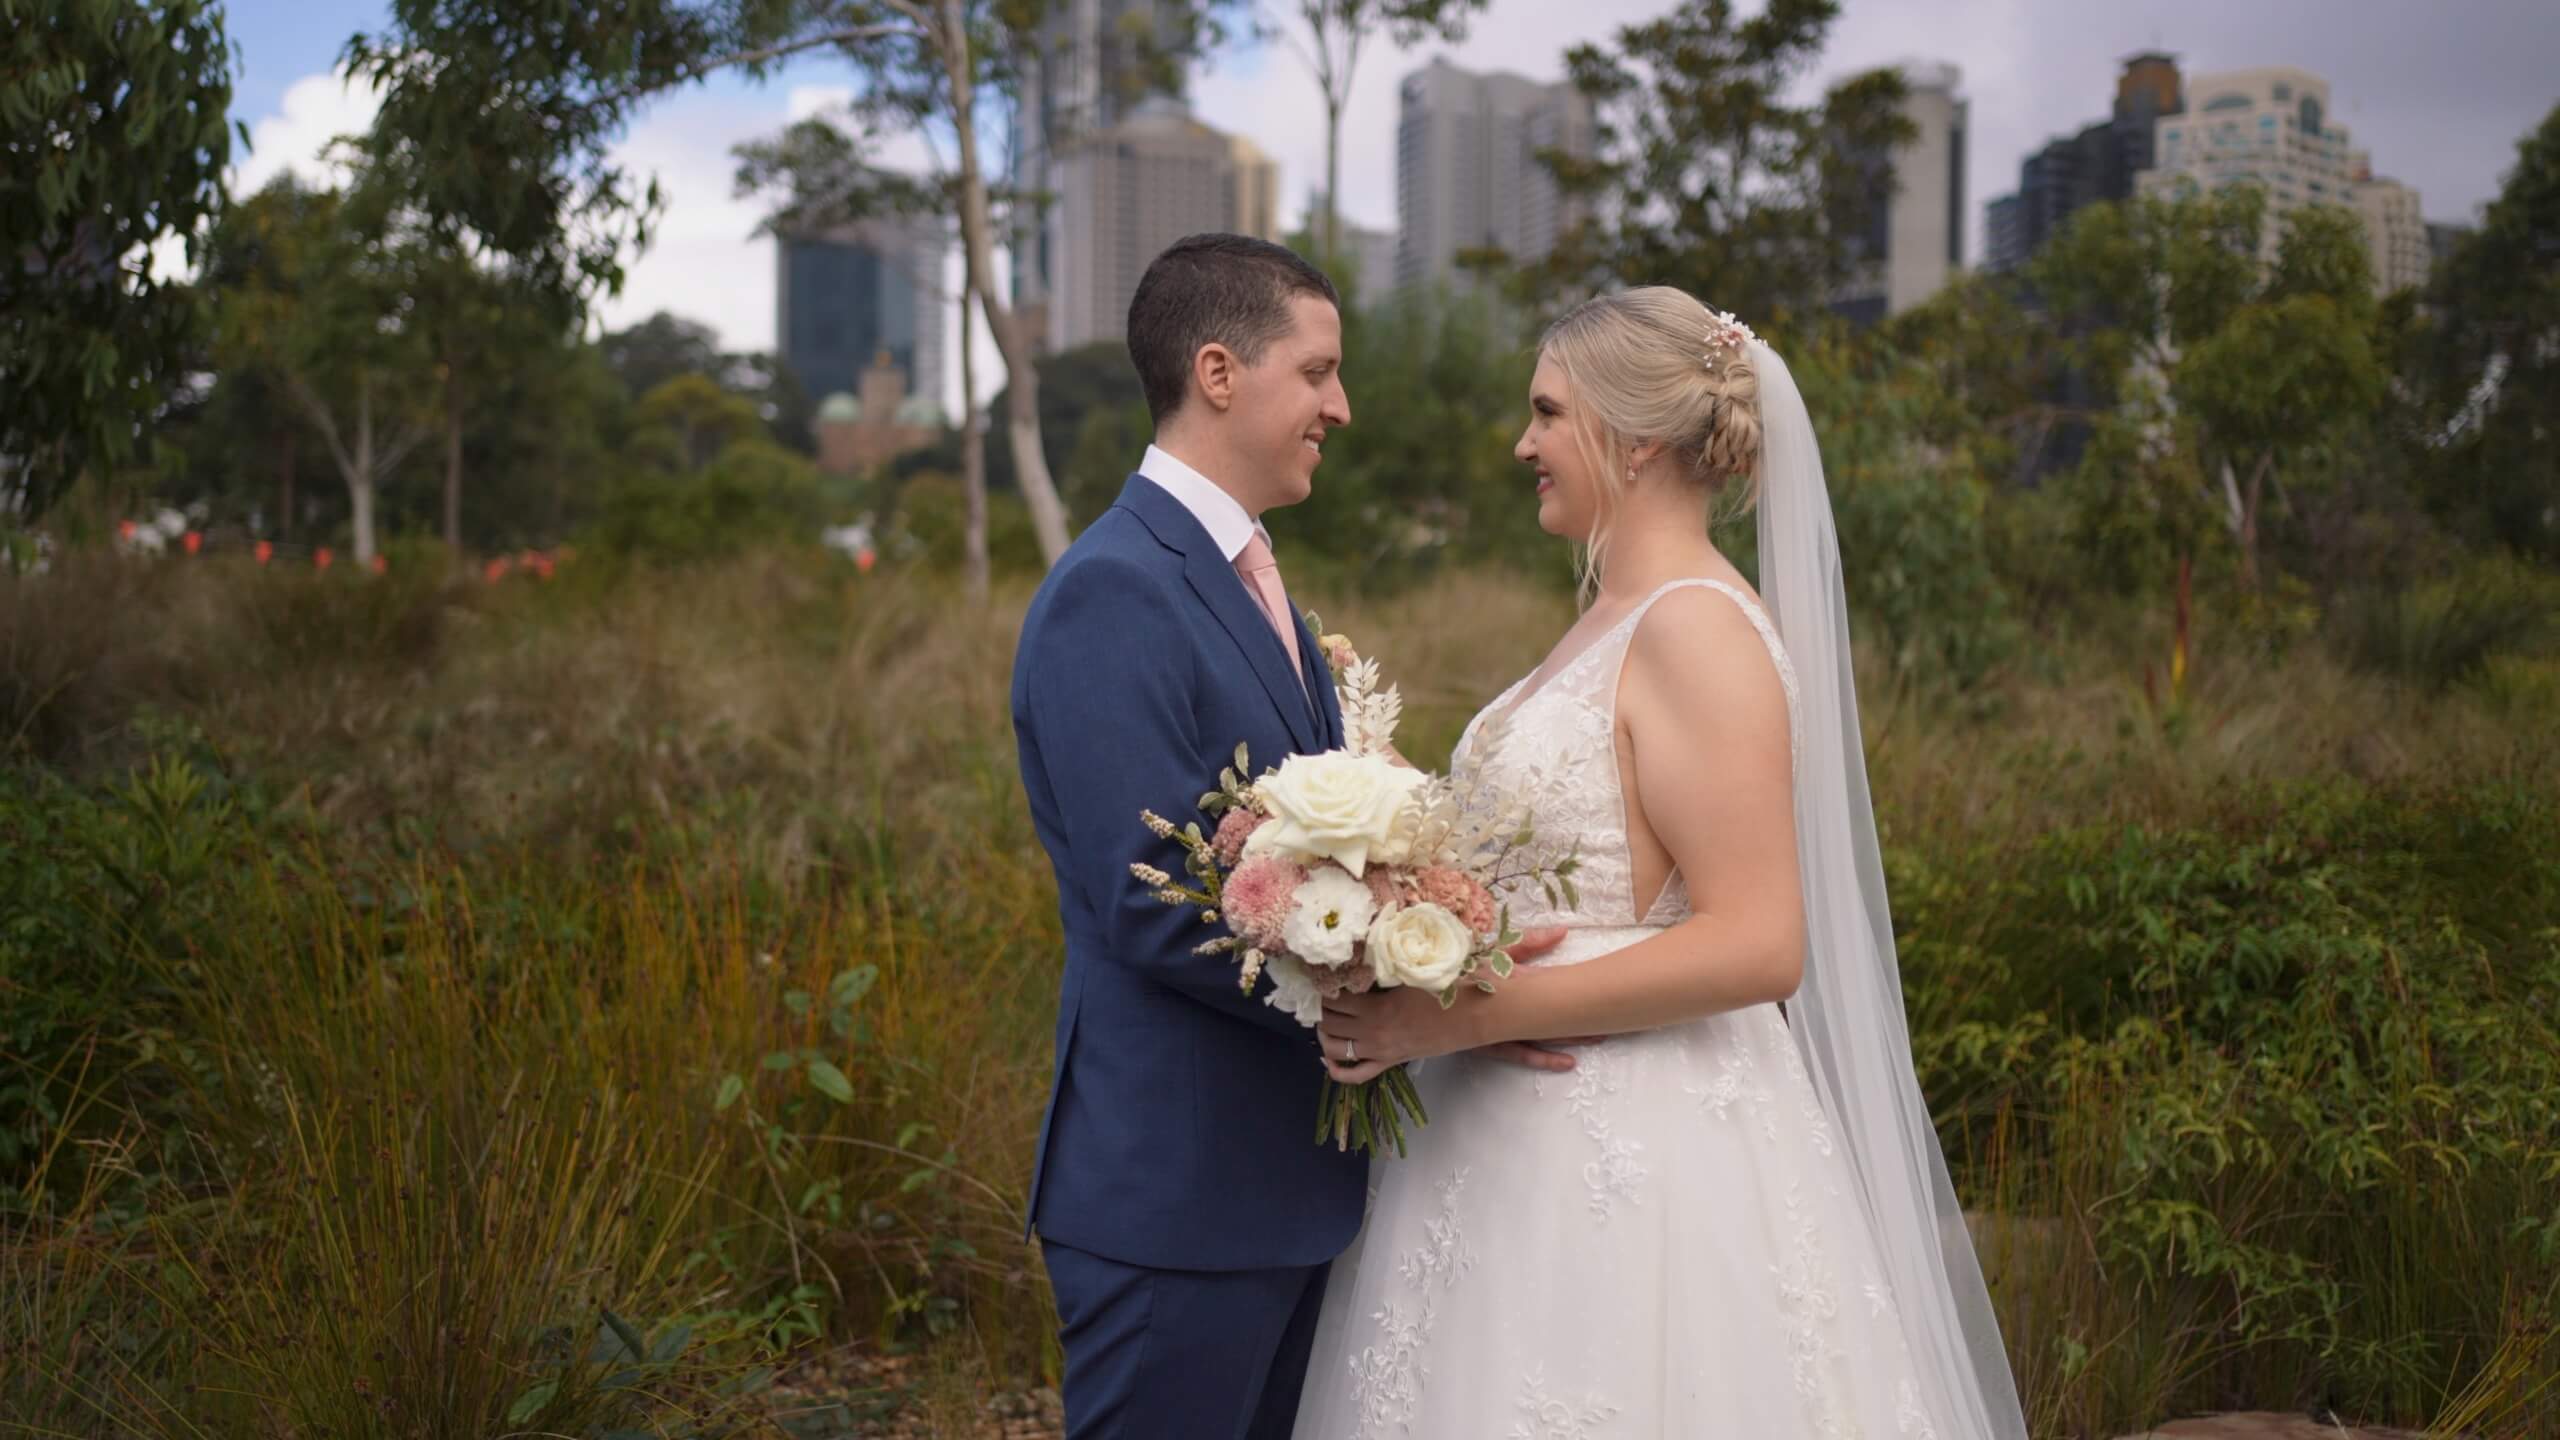 Melanie + Thomas Teaser Film // 12-Micron // Sydney Wedding Videography